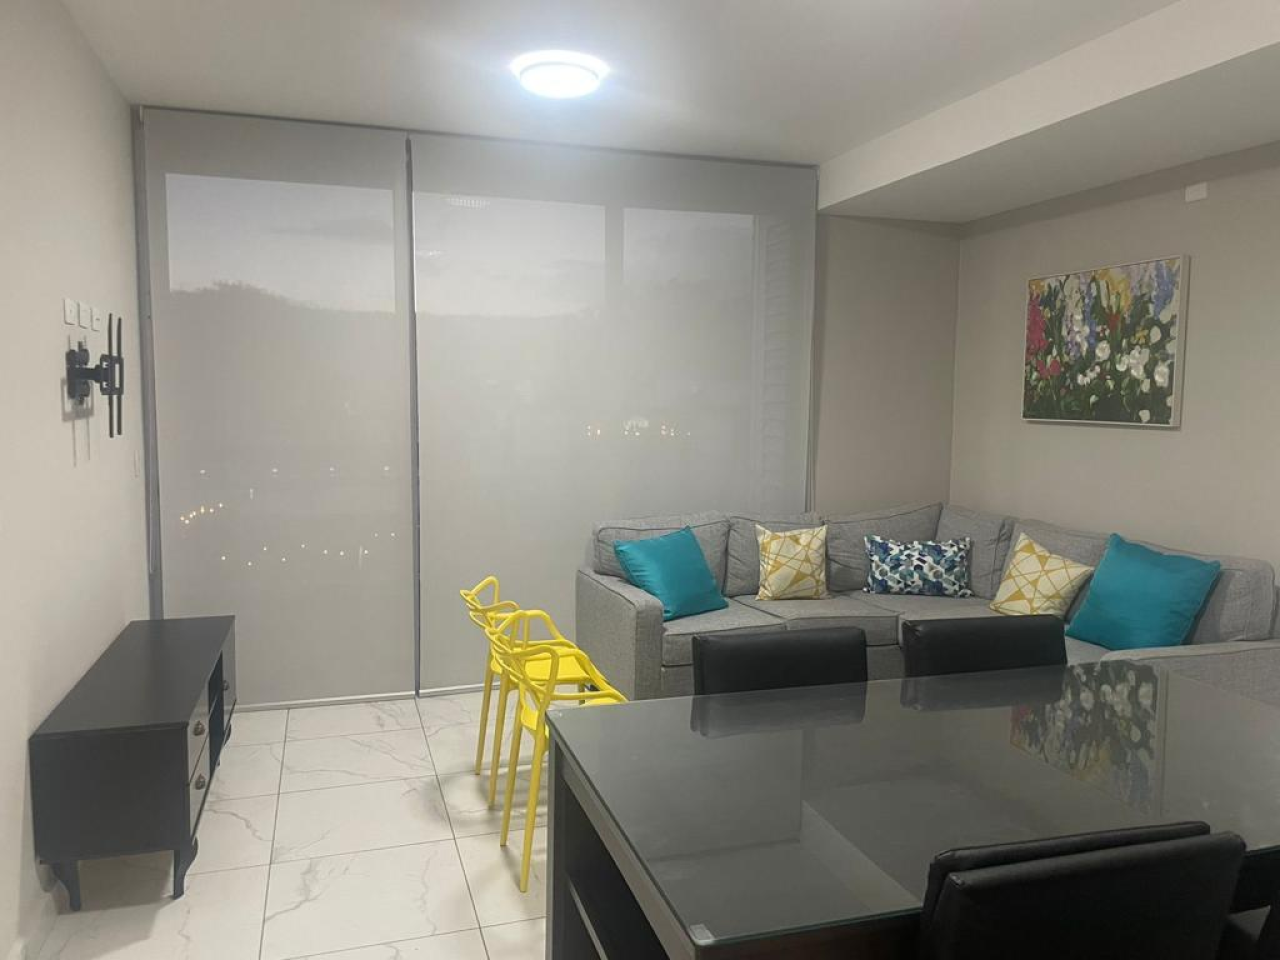 Sala de estar con piso cerámica color blanco, paredes color beide, sofá tipo L, cuadro de pintura, comedor negro y una puerta corrediza con cortinas roller color gris.